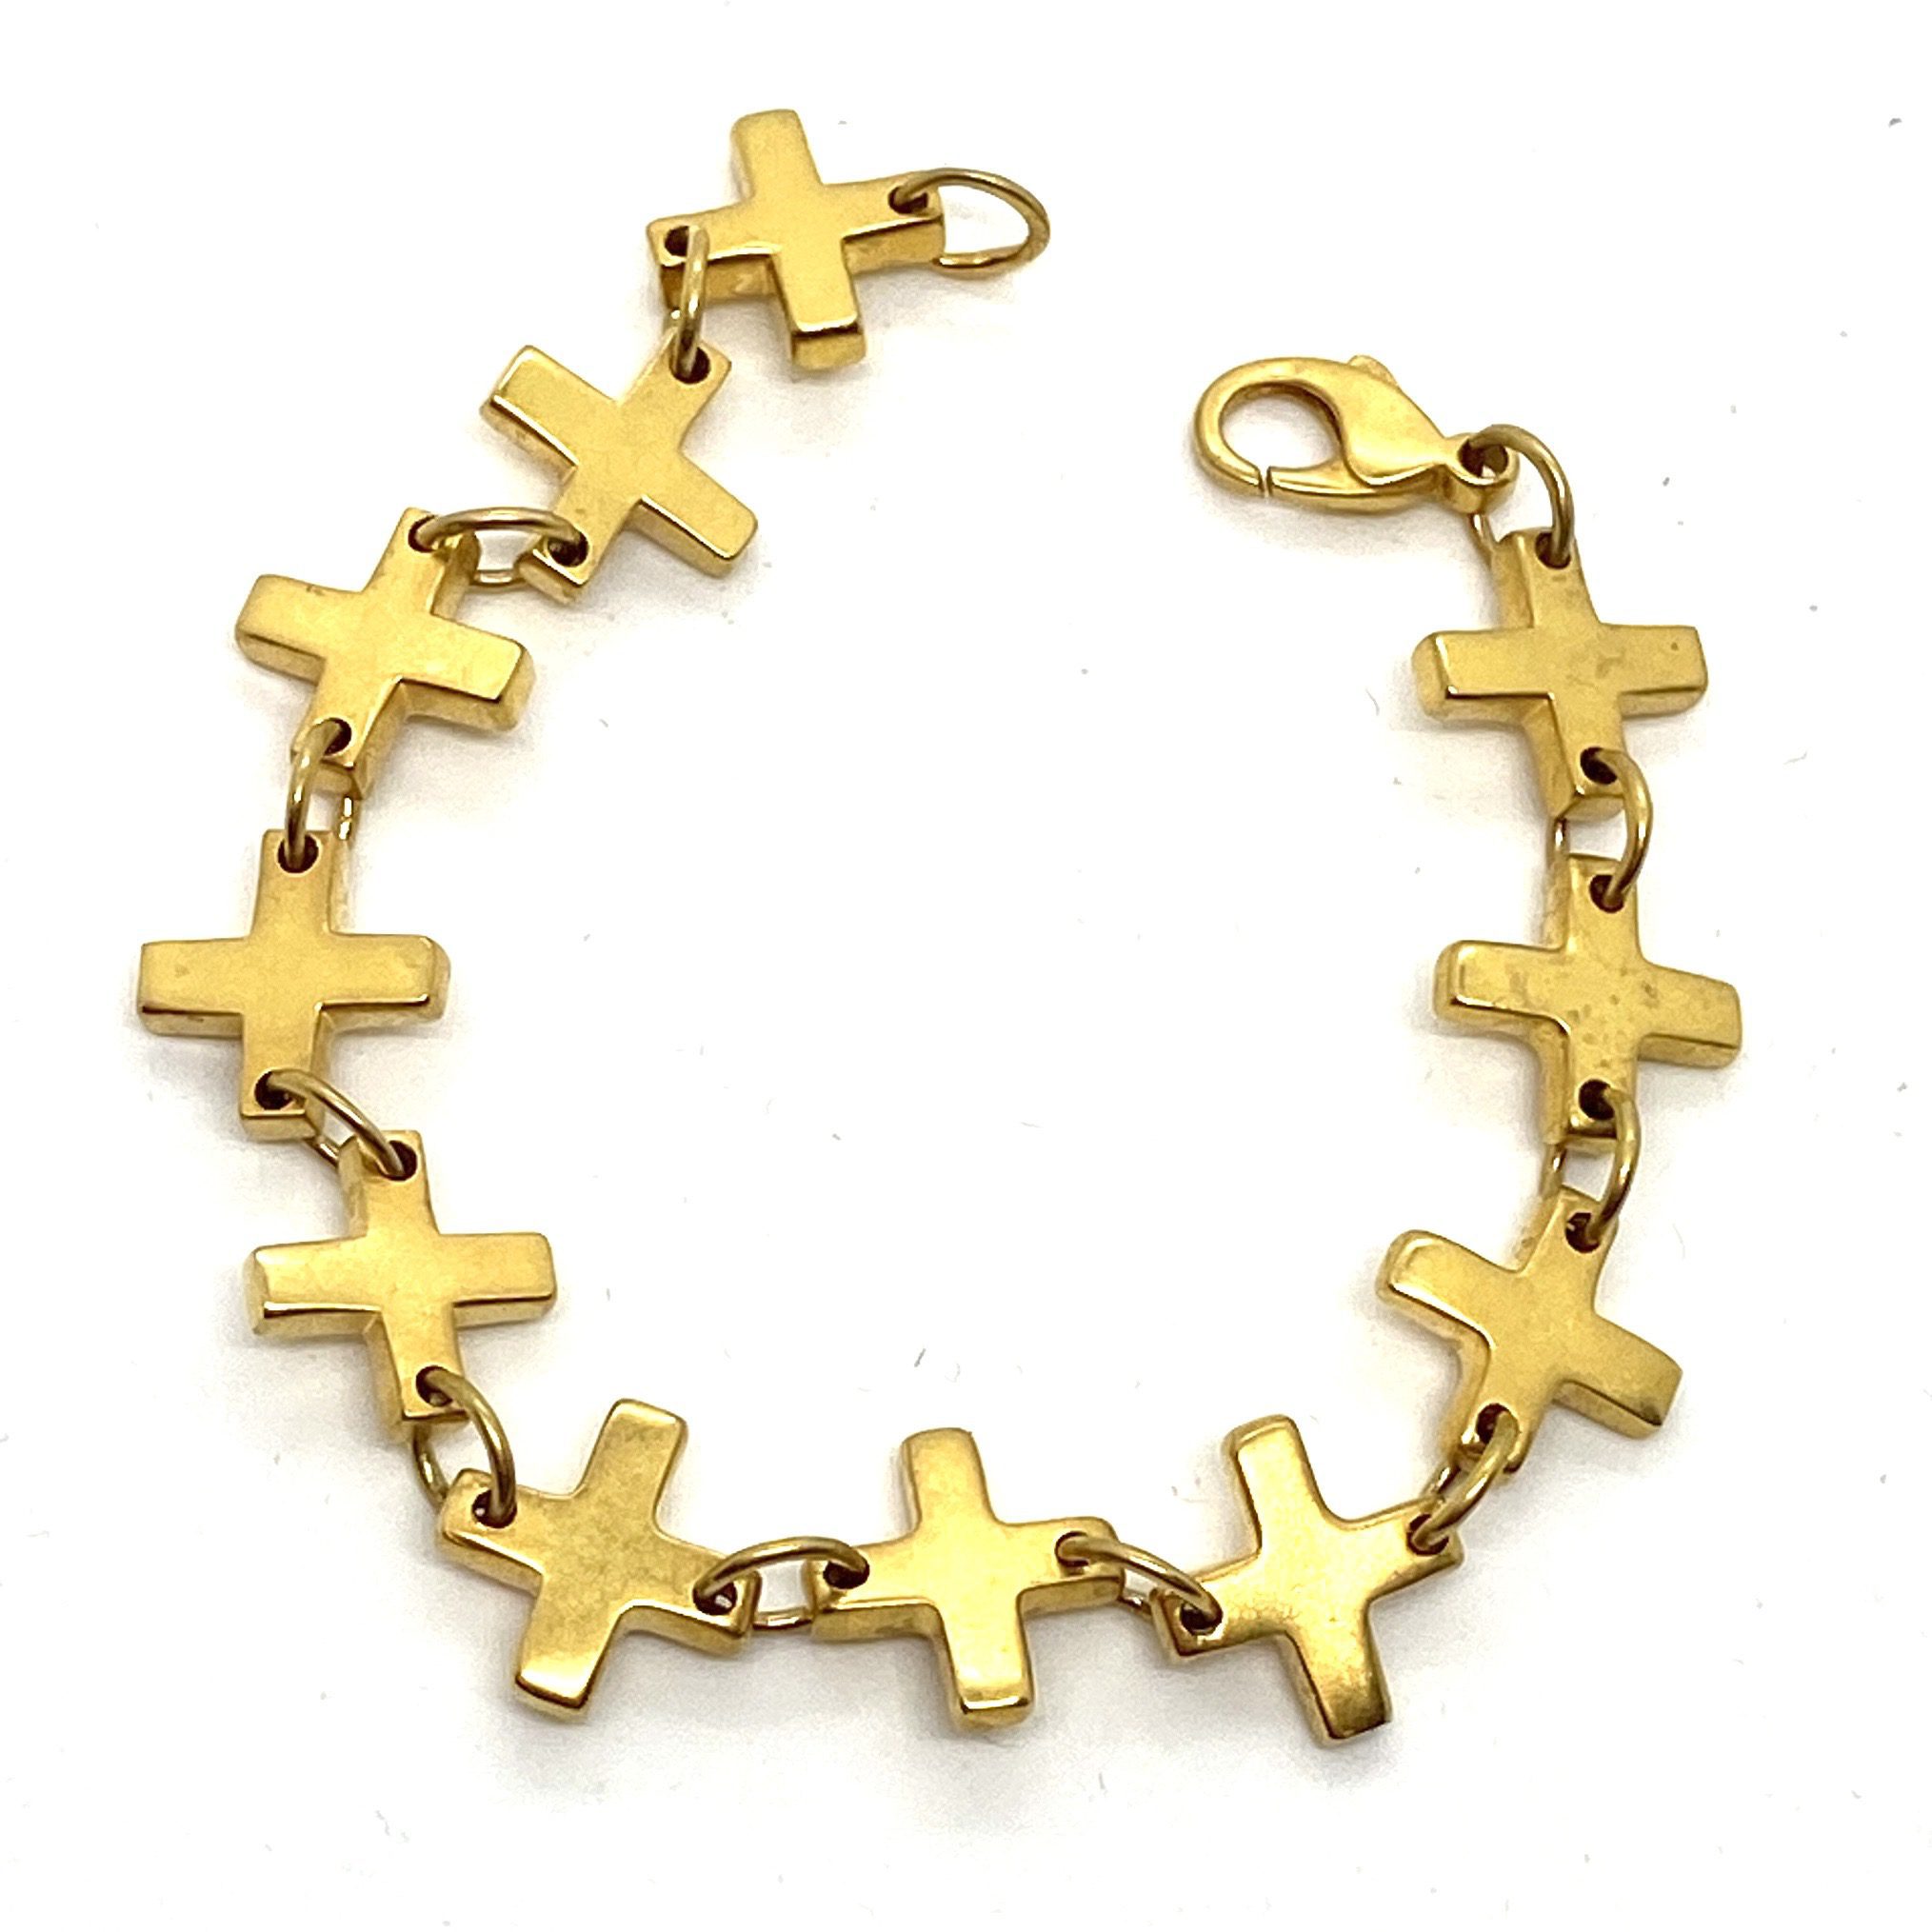 Oxidized brass bangle bracelet by Robert Lee Morris on artnet